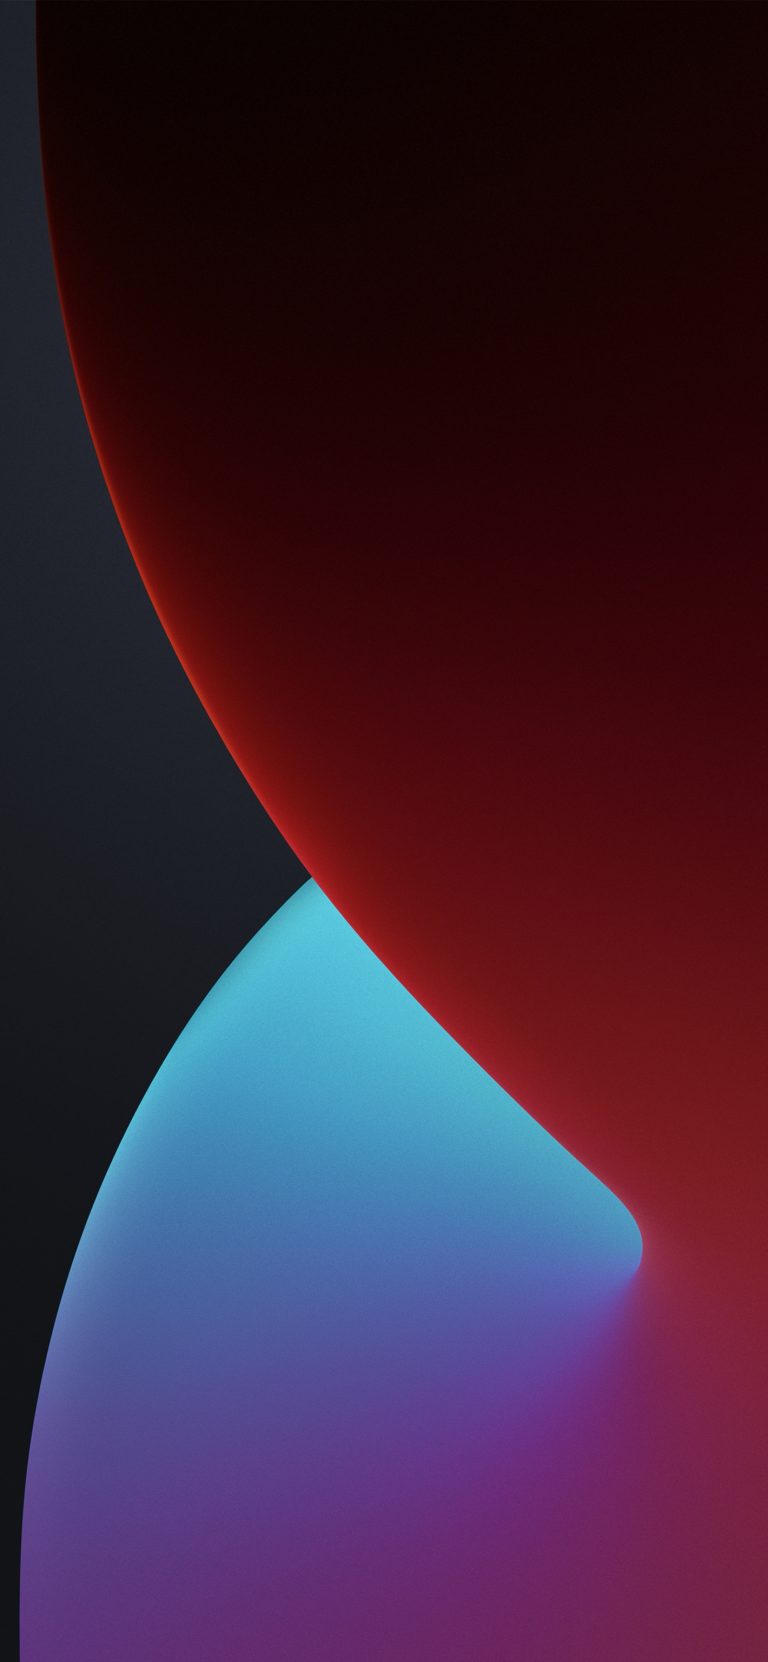 دانلود والپیپر رسمی iOS 14 - آی او اس ۱۴ برای آیفون ۲